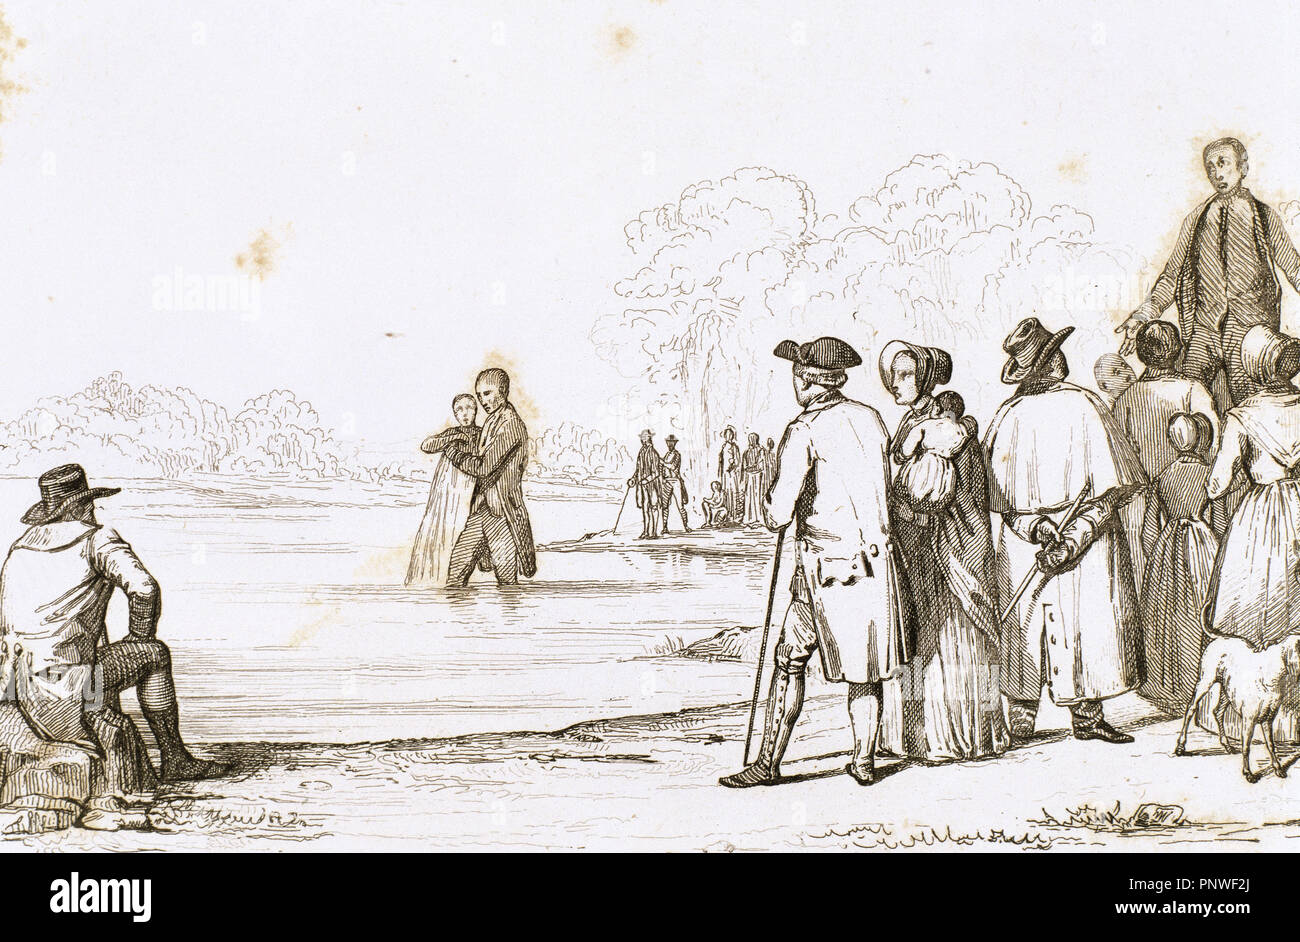 United States. Virginia. 18th century. Anabaptist baptism. Engraving, 1841. Stock Photo